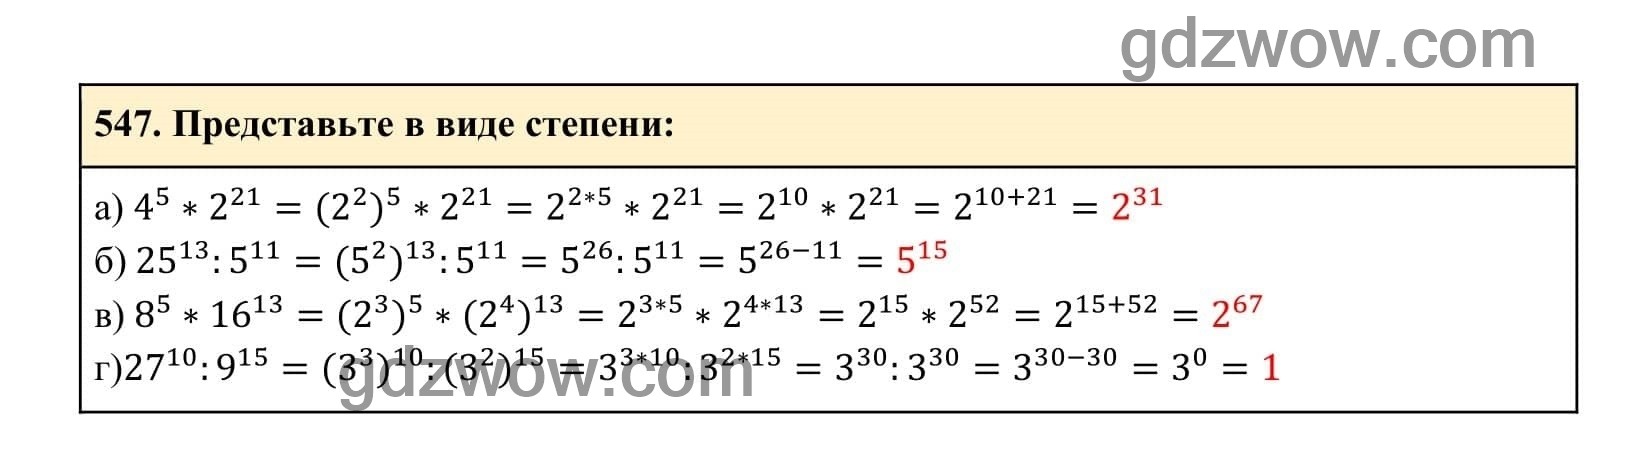 Упражнение 547 - ГДЗ по Алгебре 7 класс Учебник Макарычев (решебник) - GDZwow